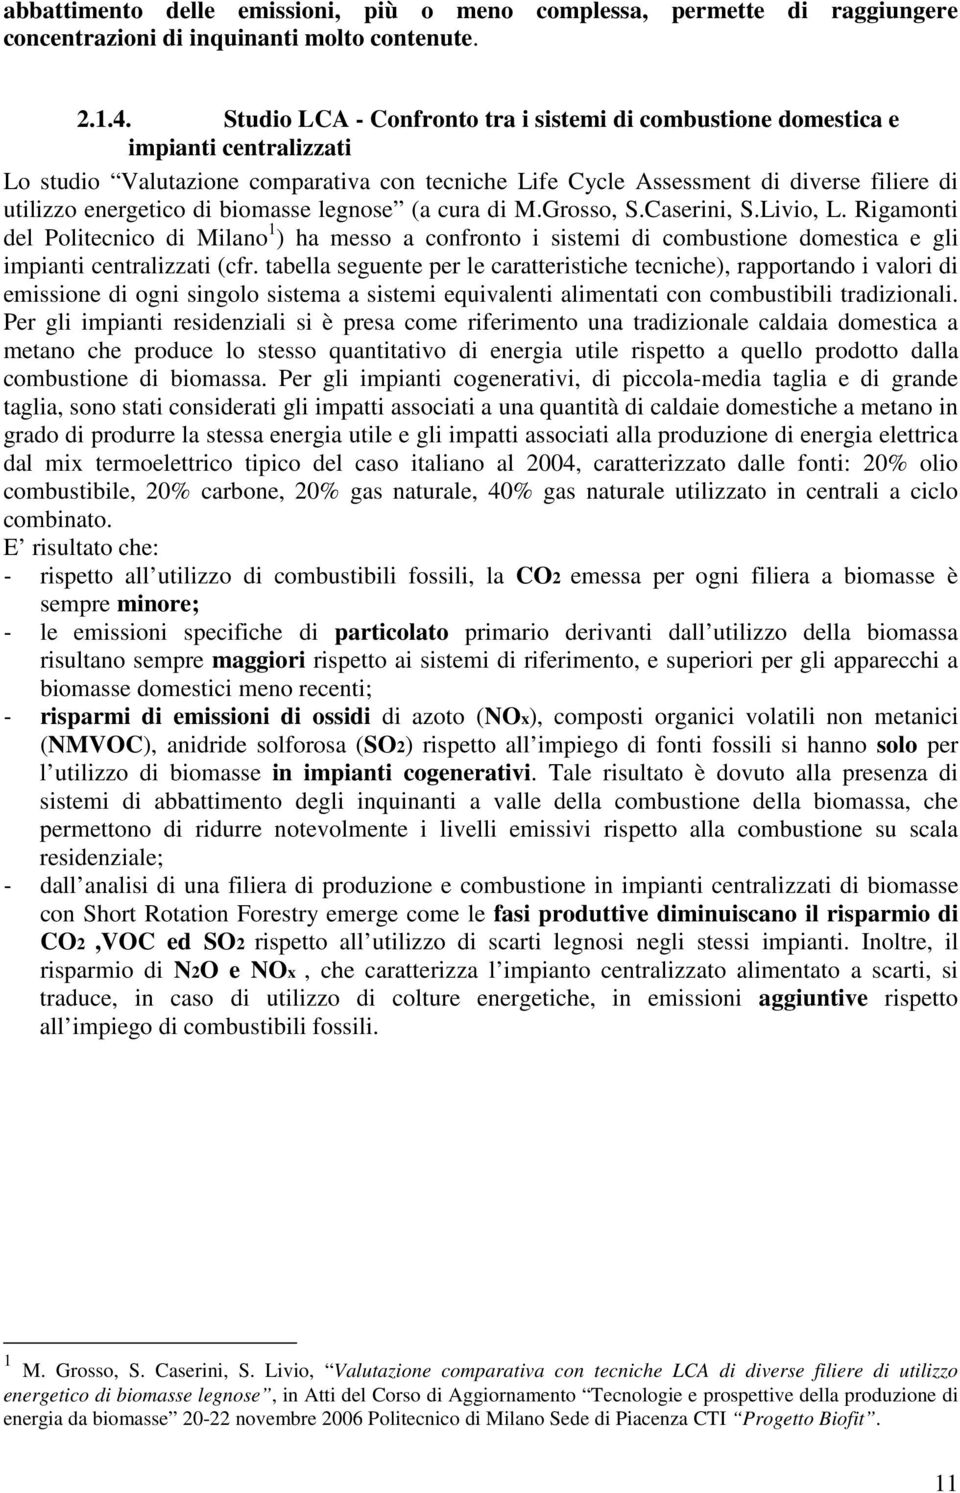 di biomasse legnose (a cura di M.Grosso, S.Caserini, S.Livio, L. Rigamonti del Politecnico di Milano 1 ) ha messo a confronto i sistemi di combustione domestica e gli impianti centralizzati (cfr.